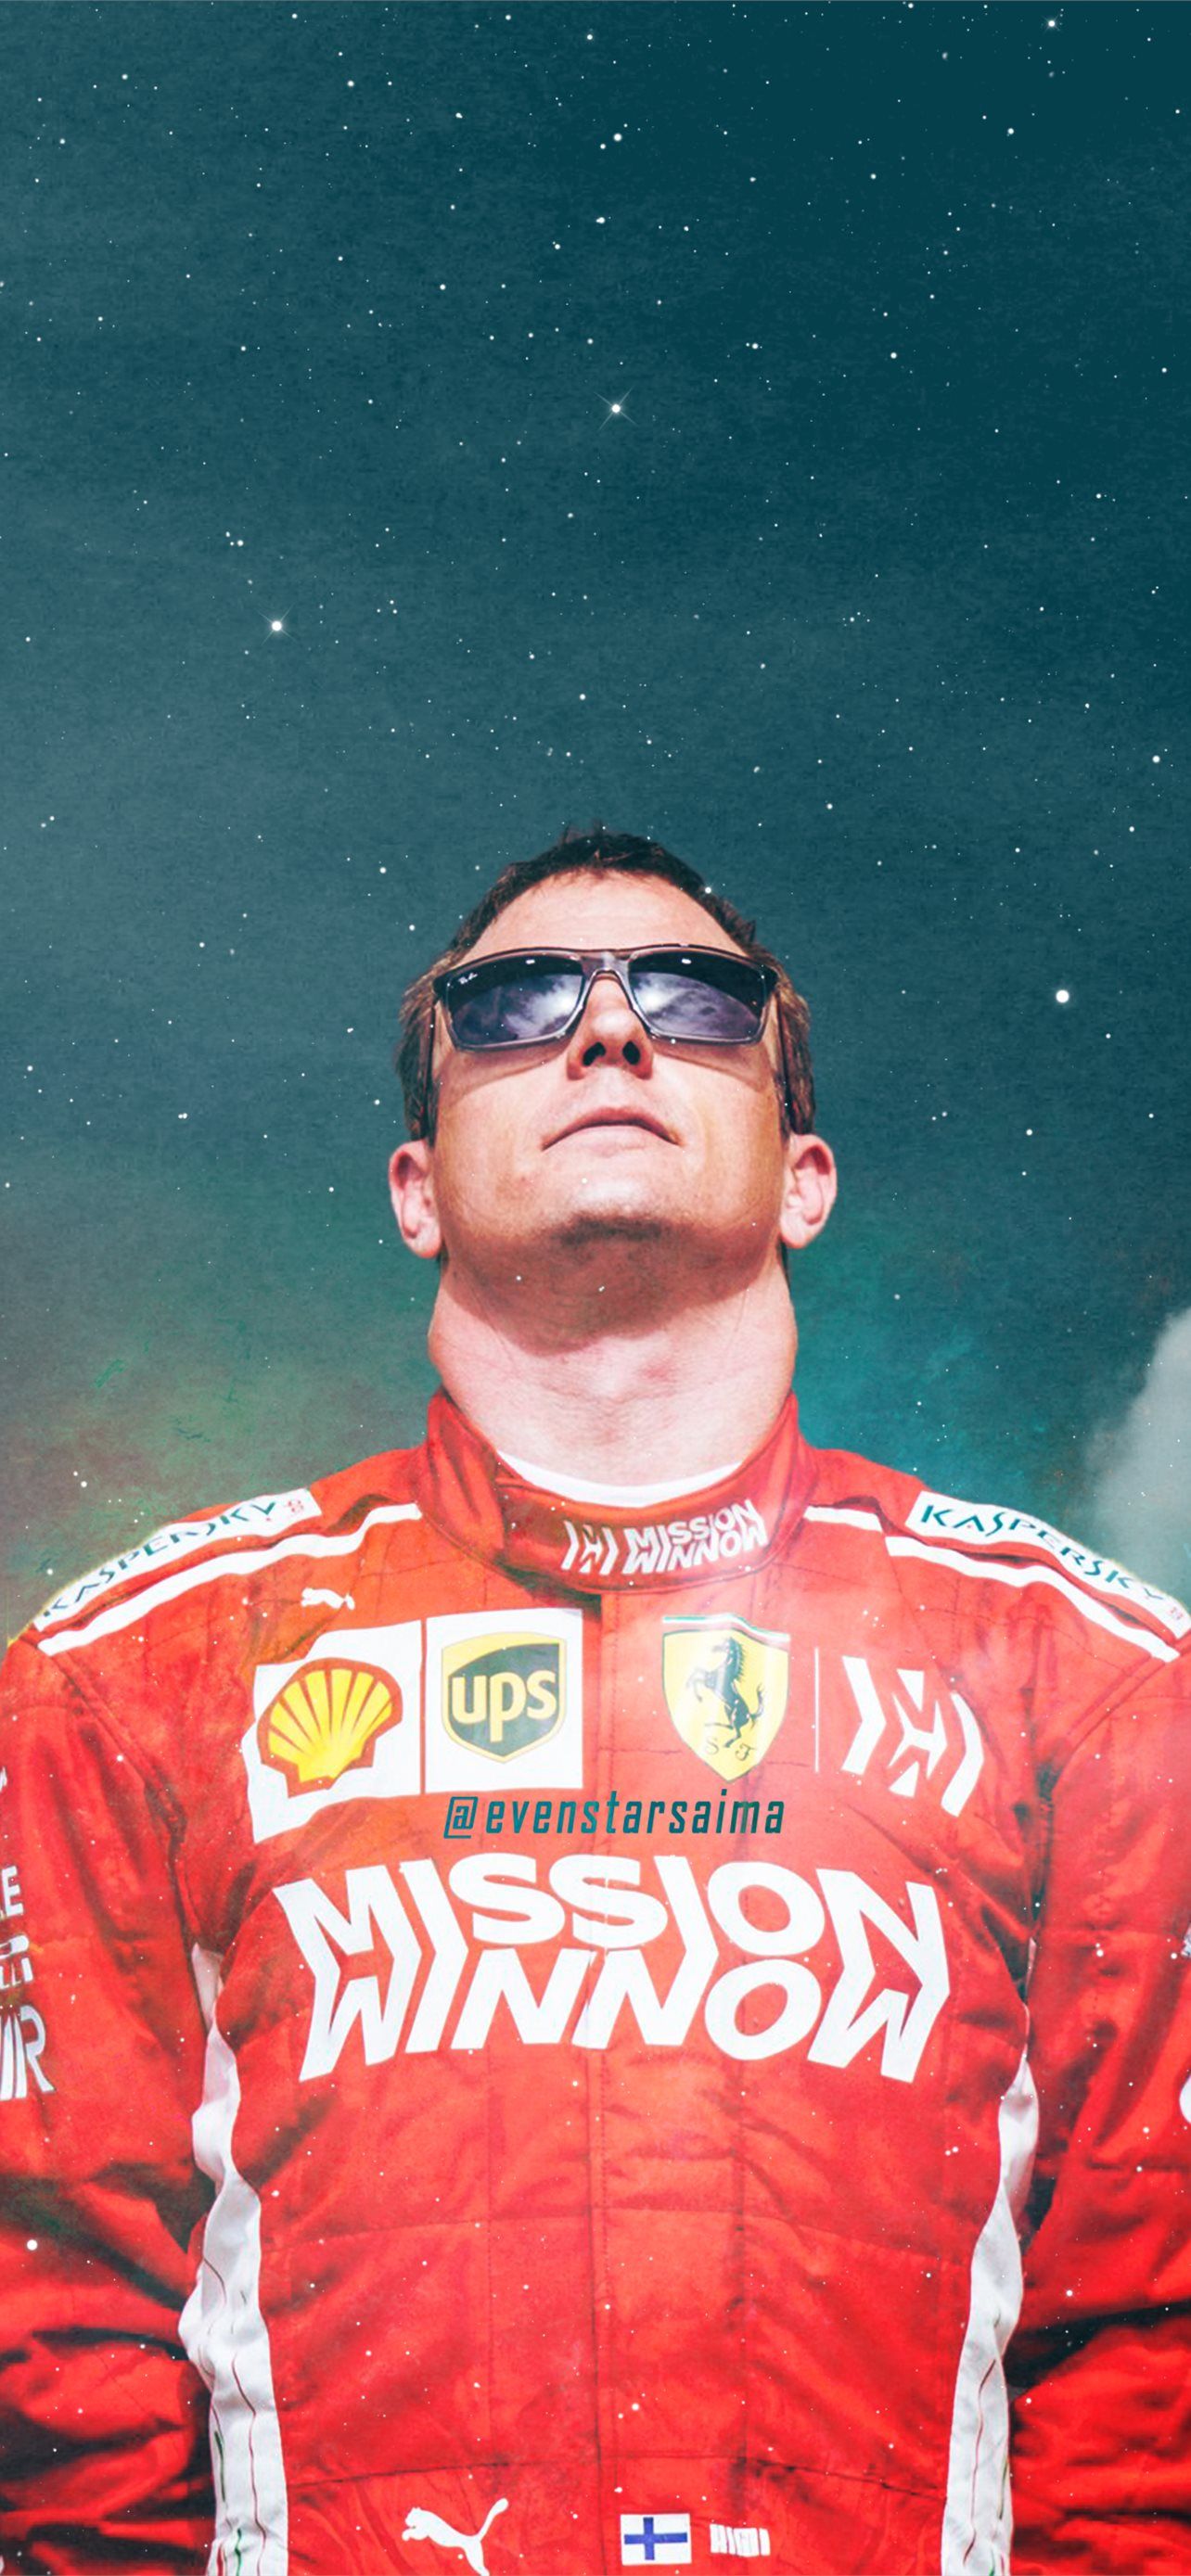  Kimi Räikkönen Hintergrundbild 1284x2778. Latest iPhone Wallpaper Free HD